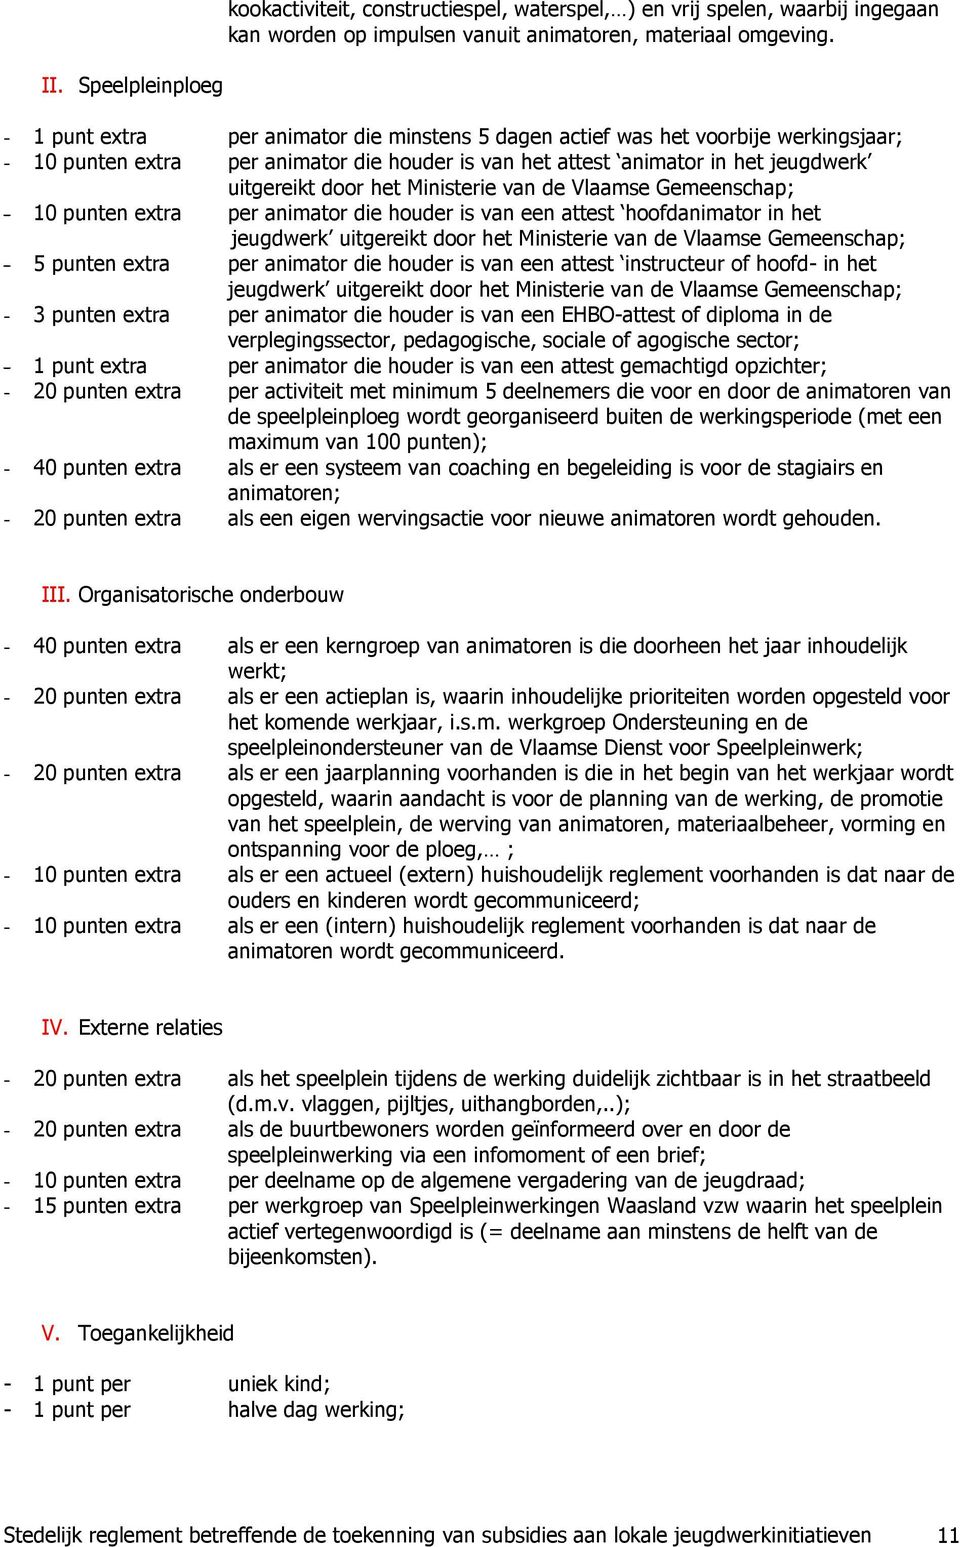 door het Ministerie van de Vlaamse Gemeenschap; - 10 punten extra per animator die houder is van een attest hoofdanimator in het jeugdwerk uitgereikt door het Ministerie van de Vlaamse Gemeenschap; -